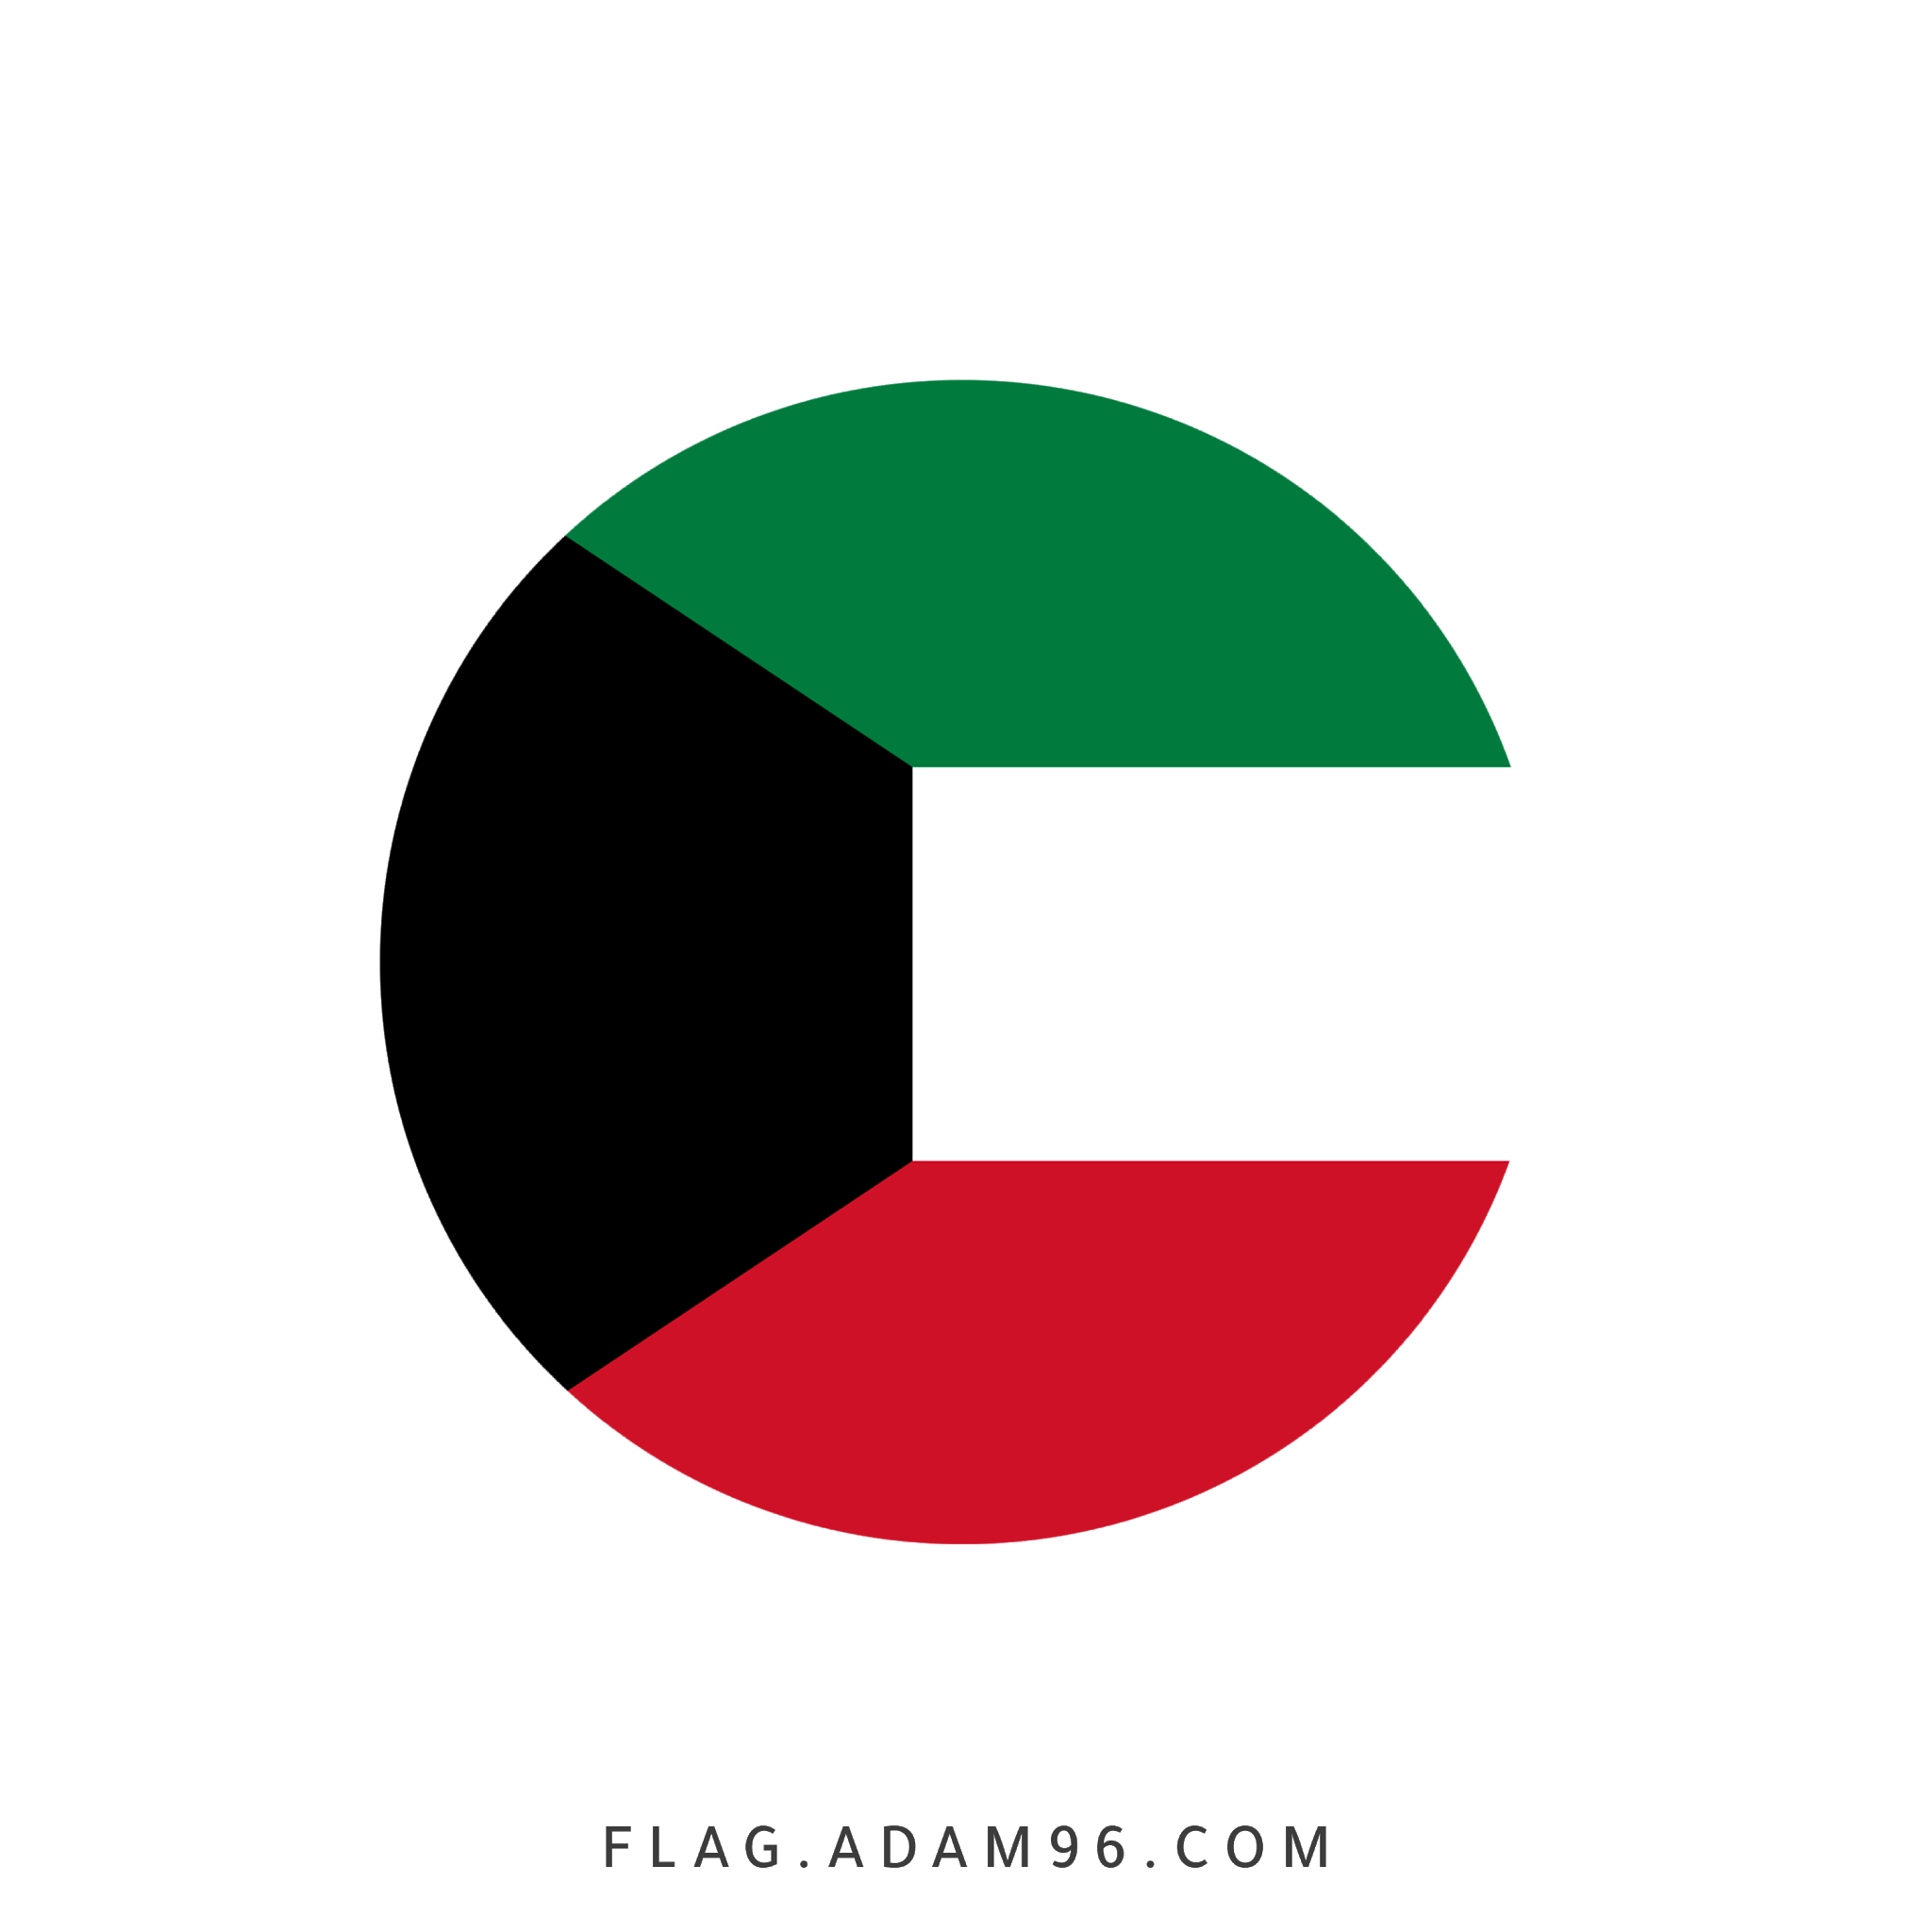 تحميل علم الكويت بشكل دائري للتصميم خلفيات علم الكويت للتصميم بصيغة PNG